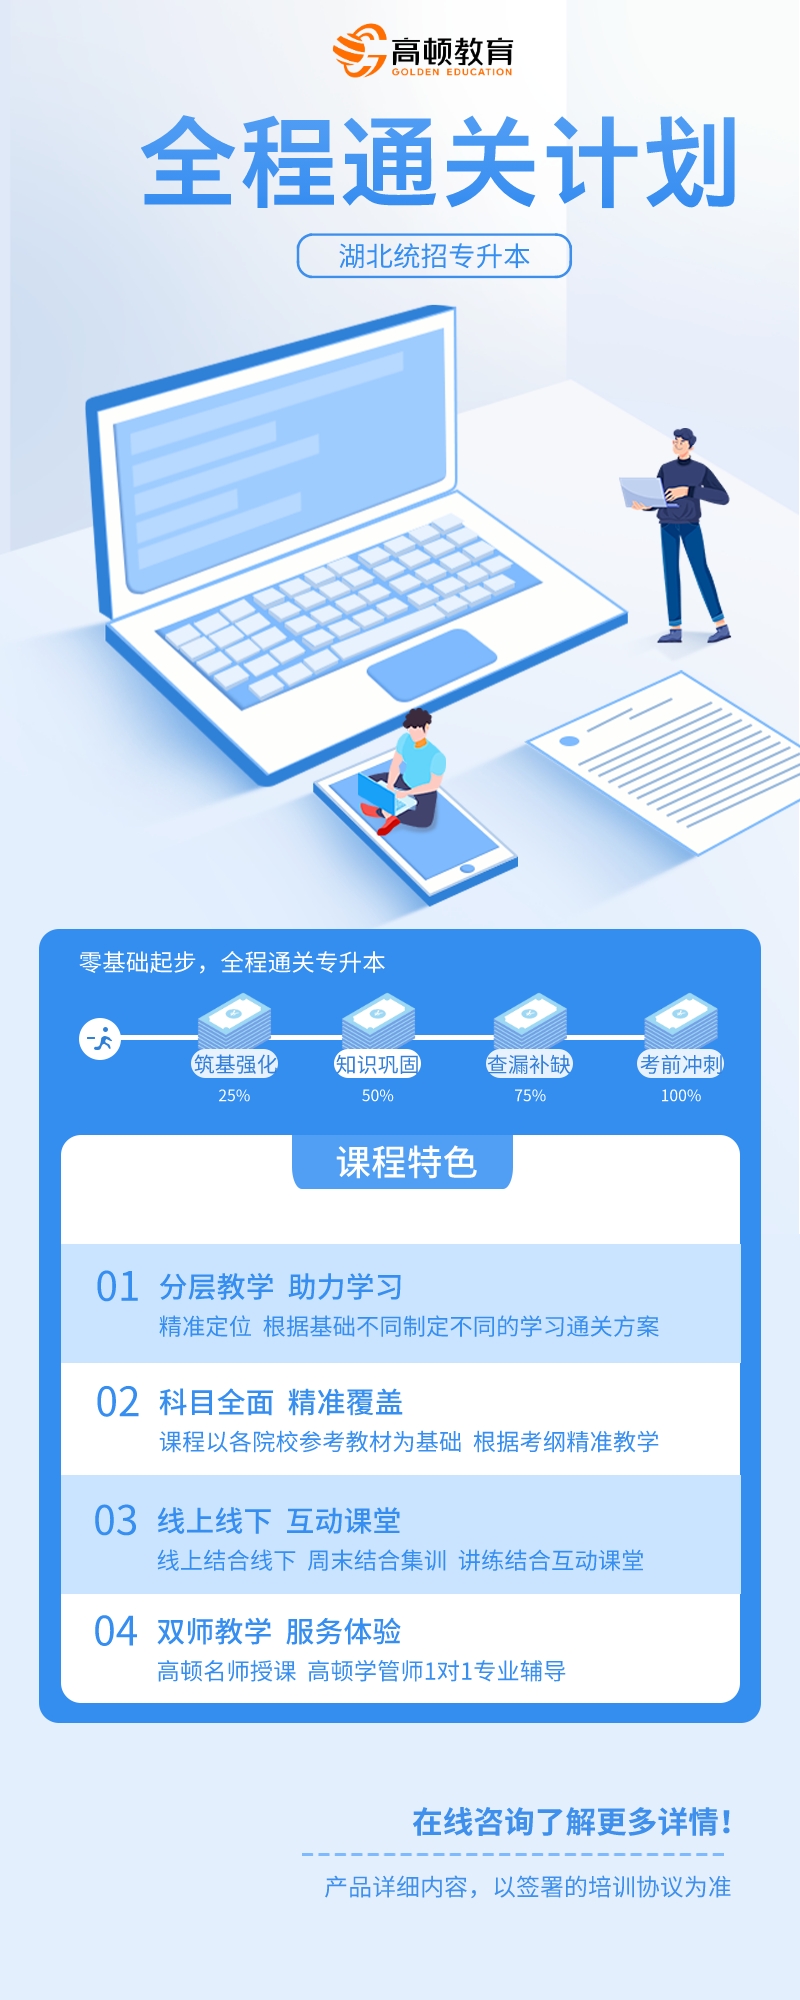 https://simg01.gaodunwangxiao.com/uploadfiles/product-center/202304/26/42d4d_20230426161517.jpeg